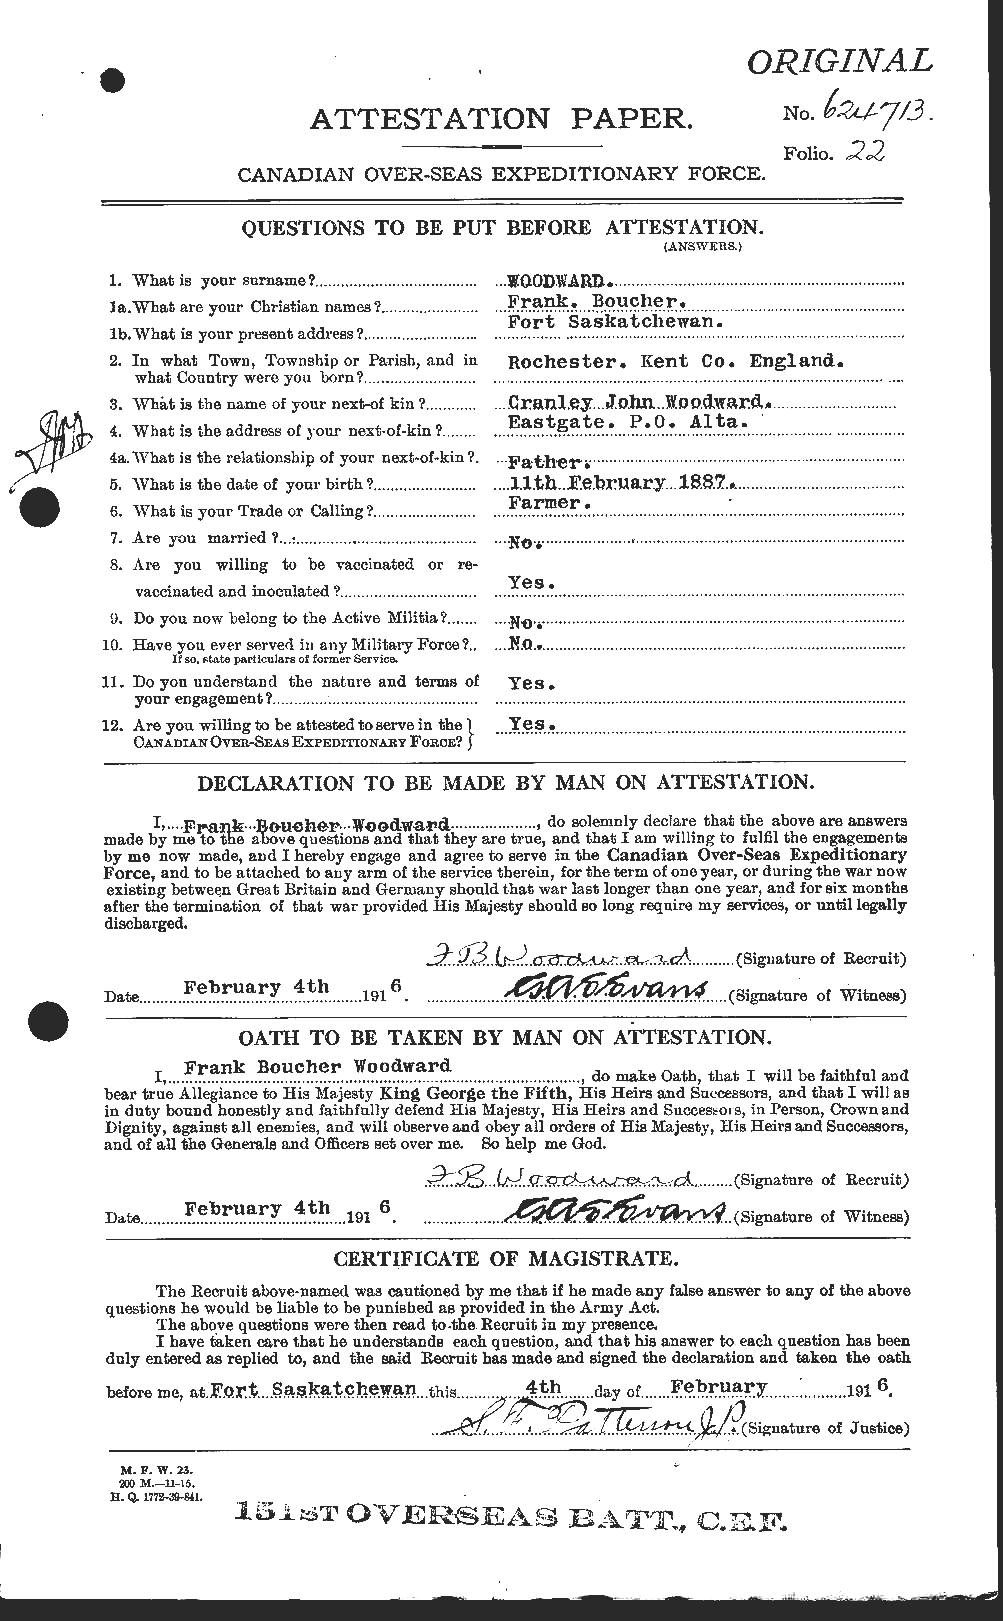 Dossiers du Personnel de la Première Guerre mondiale - CEC 683622a